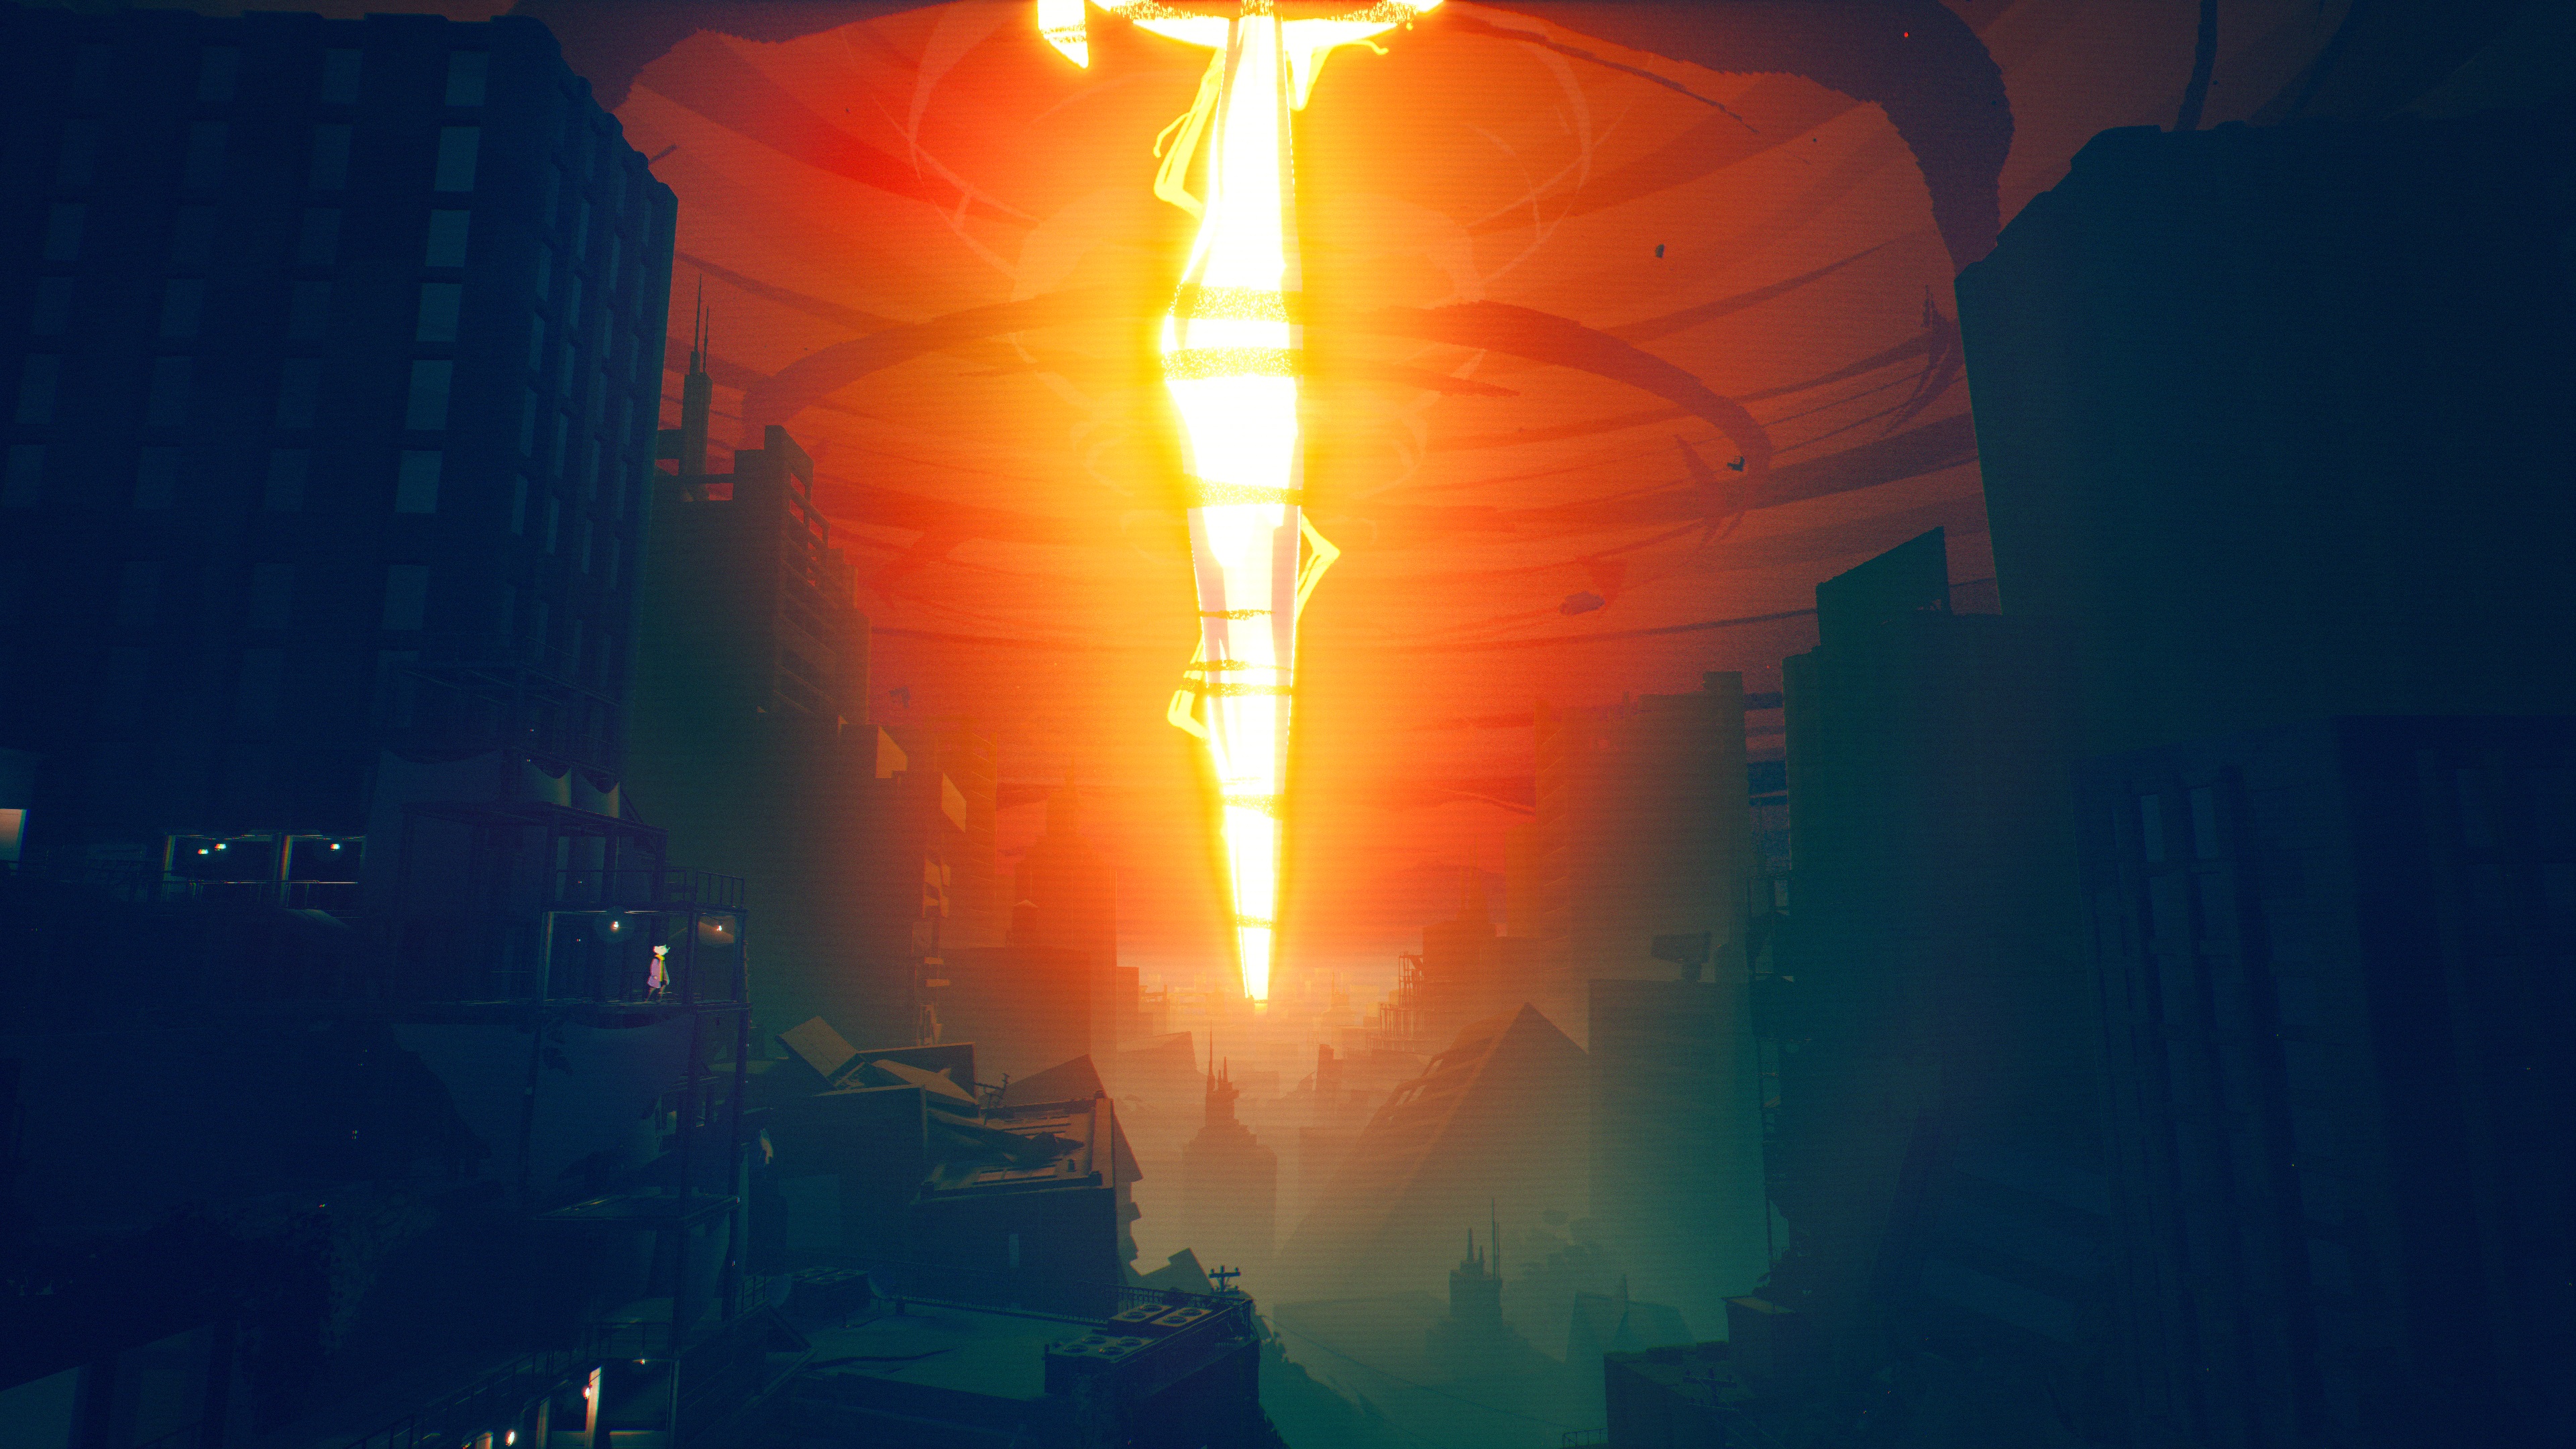 pillar of light in ruined city